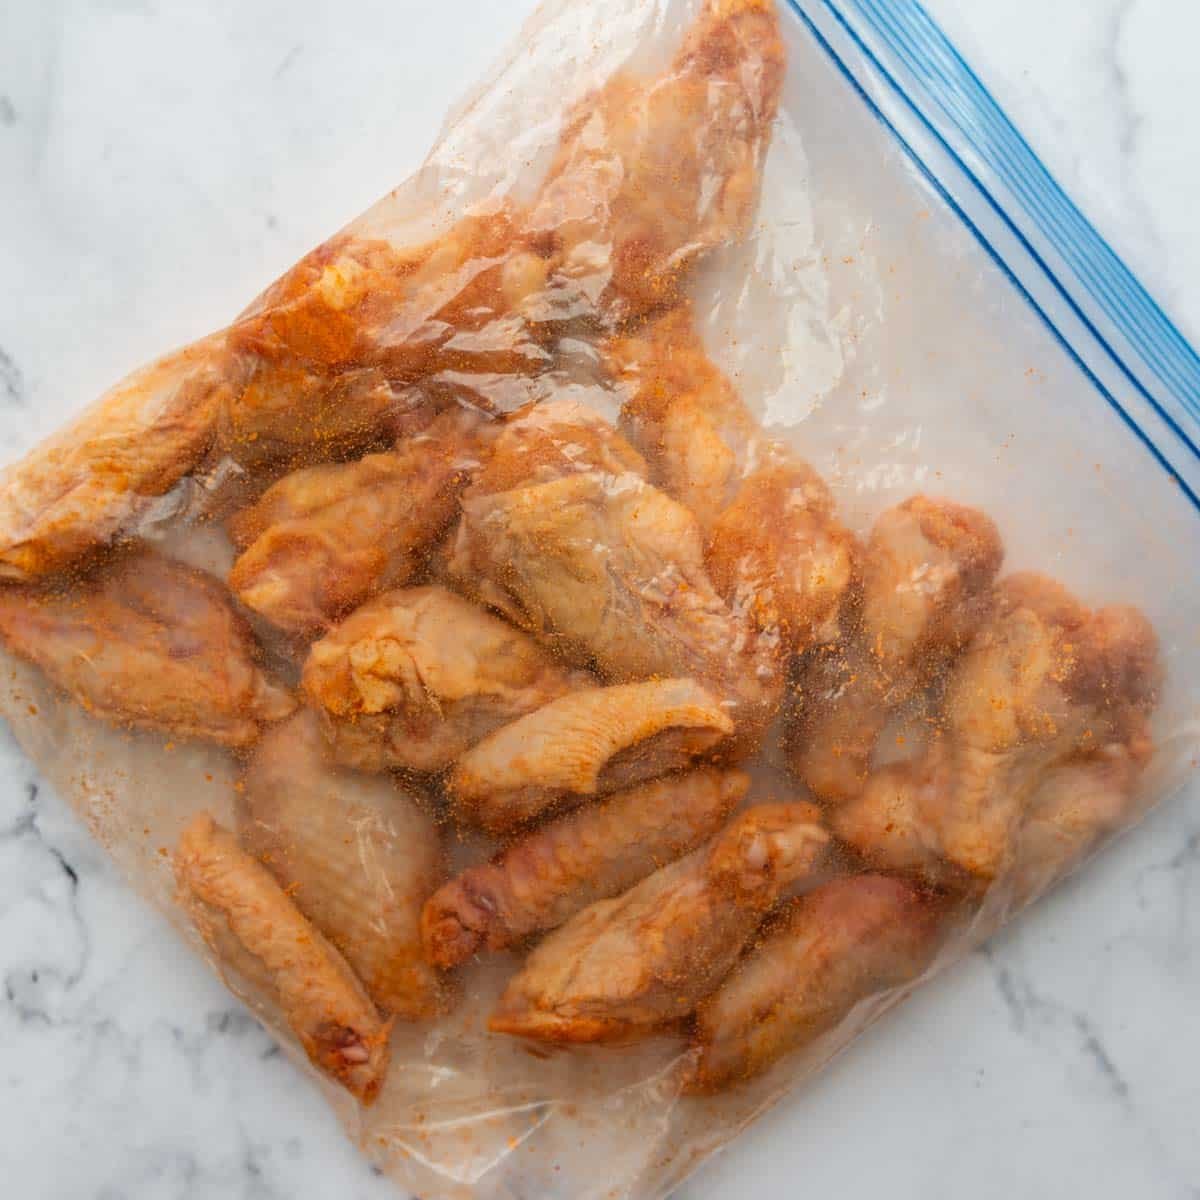 unbaked wings in a ziplock bag.